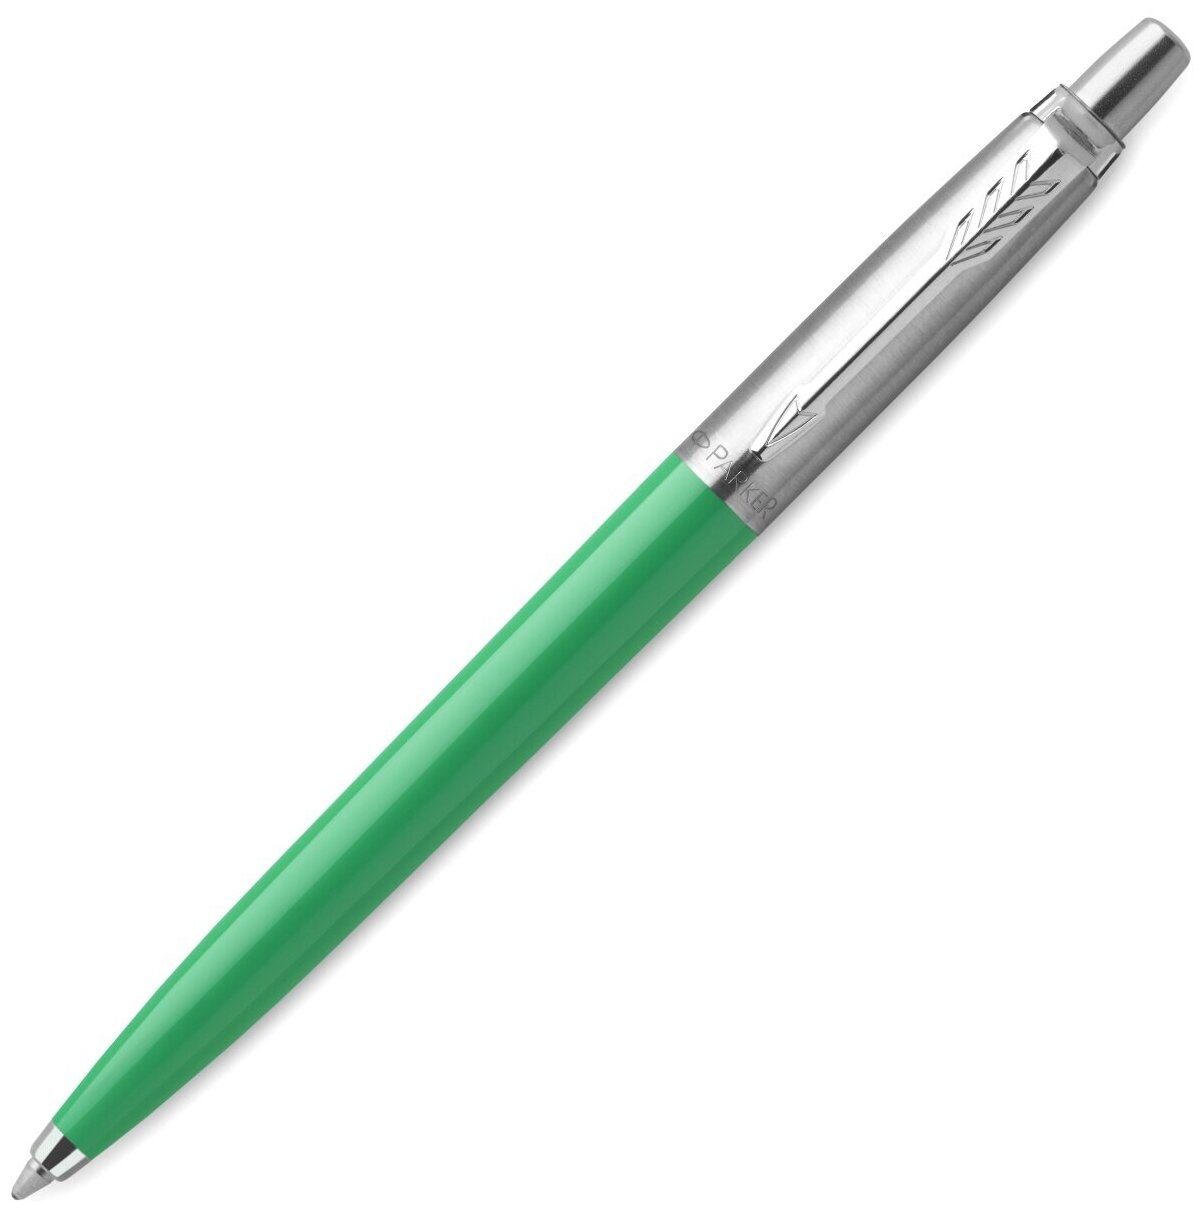 Parker Ручка шариковая Parker Jotter Original K60, корпус зеленый, перо M, чернила синие, подарочная коробка.